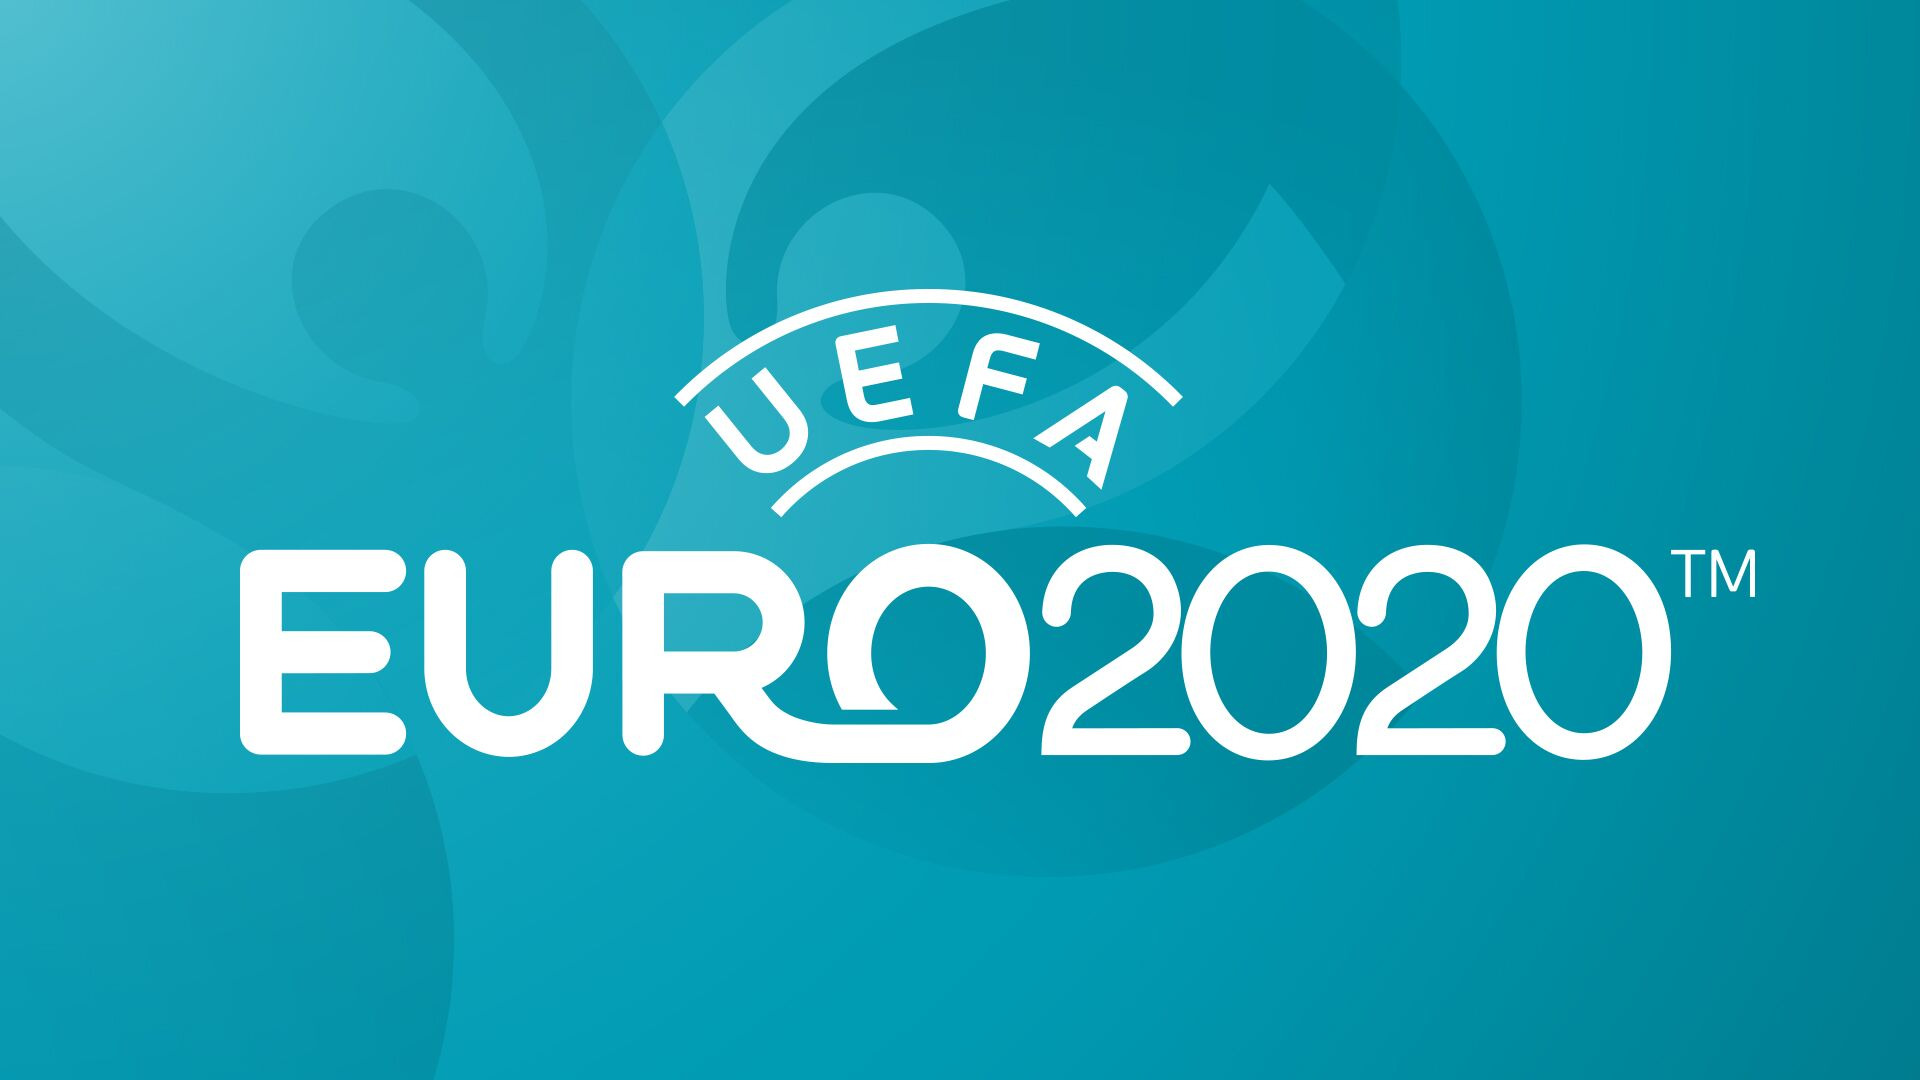 Big Euro 2020 logo